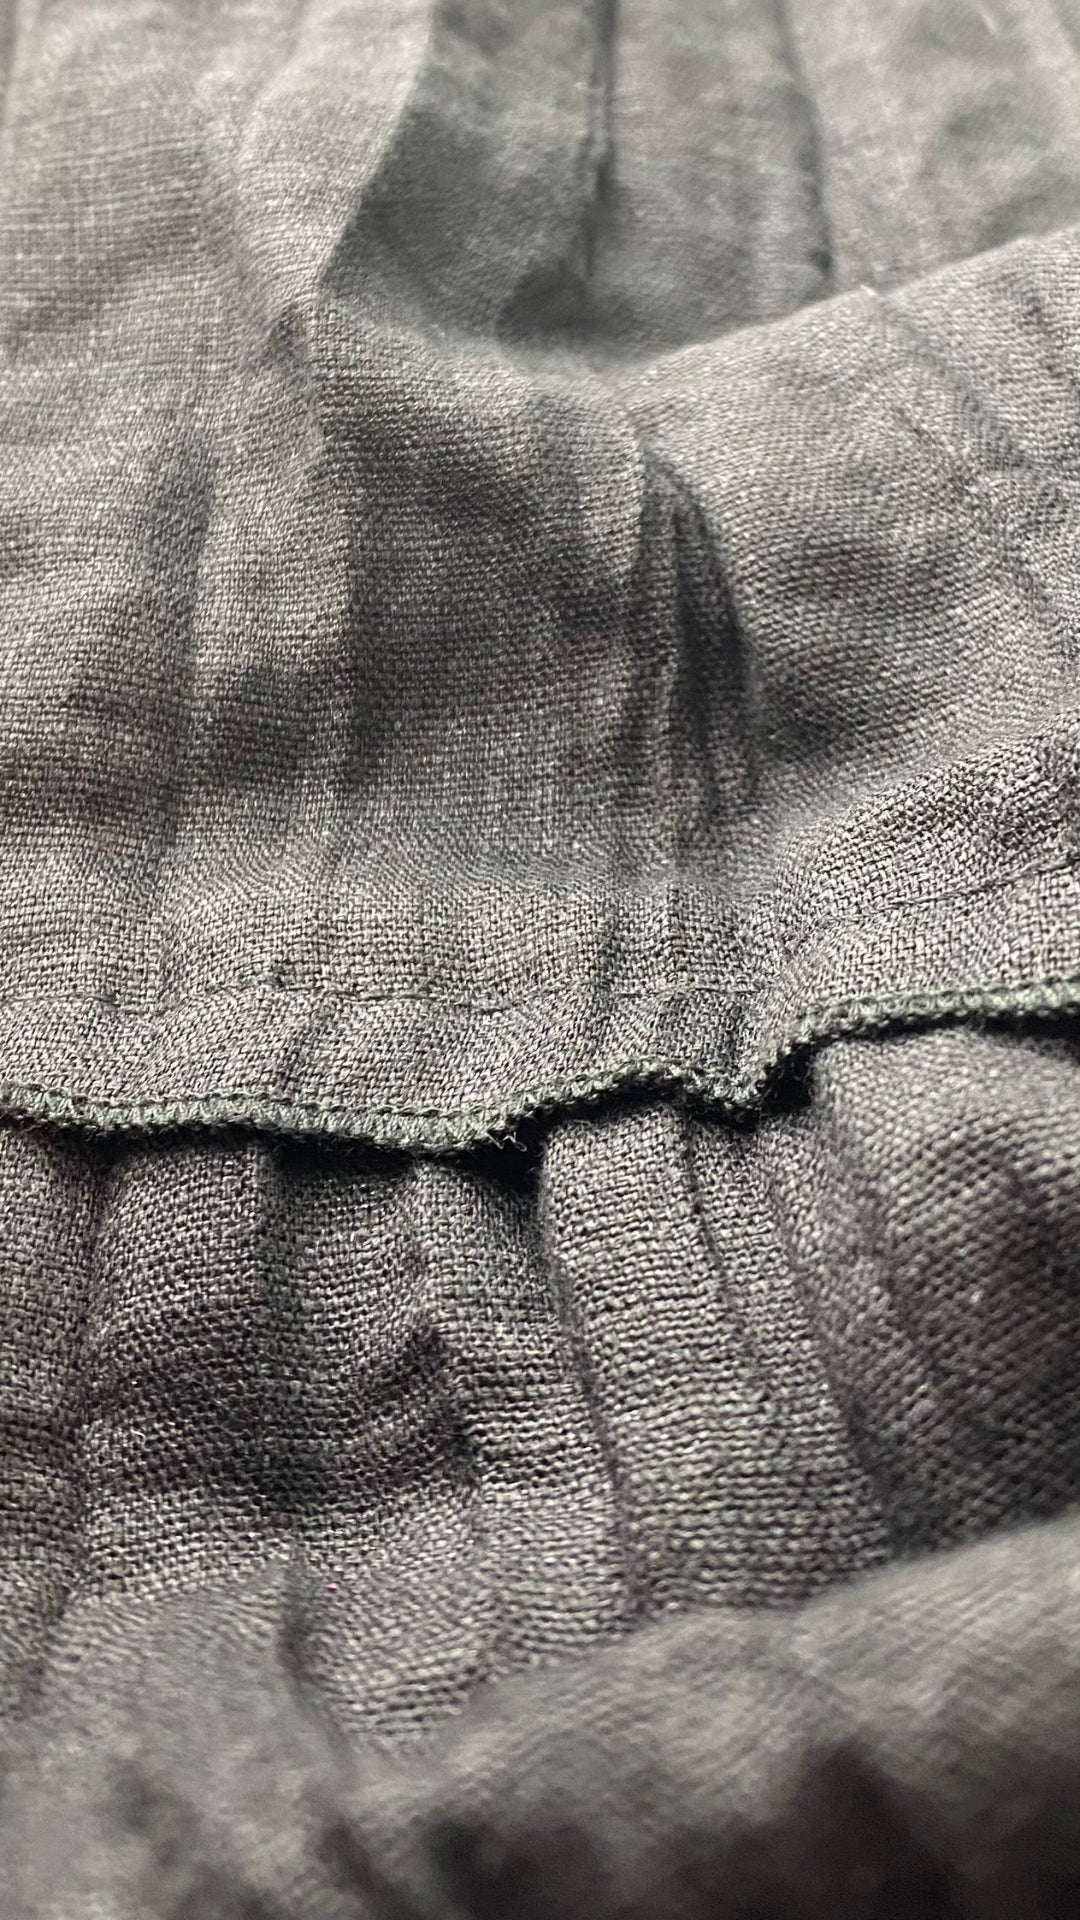 Robe étagée plissée noire, marque L'indice, taille 16. Vue du tissu.